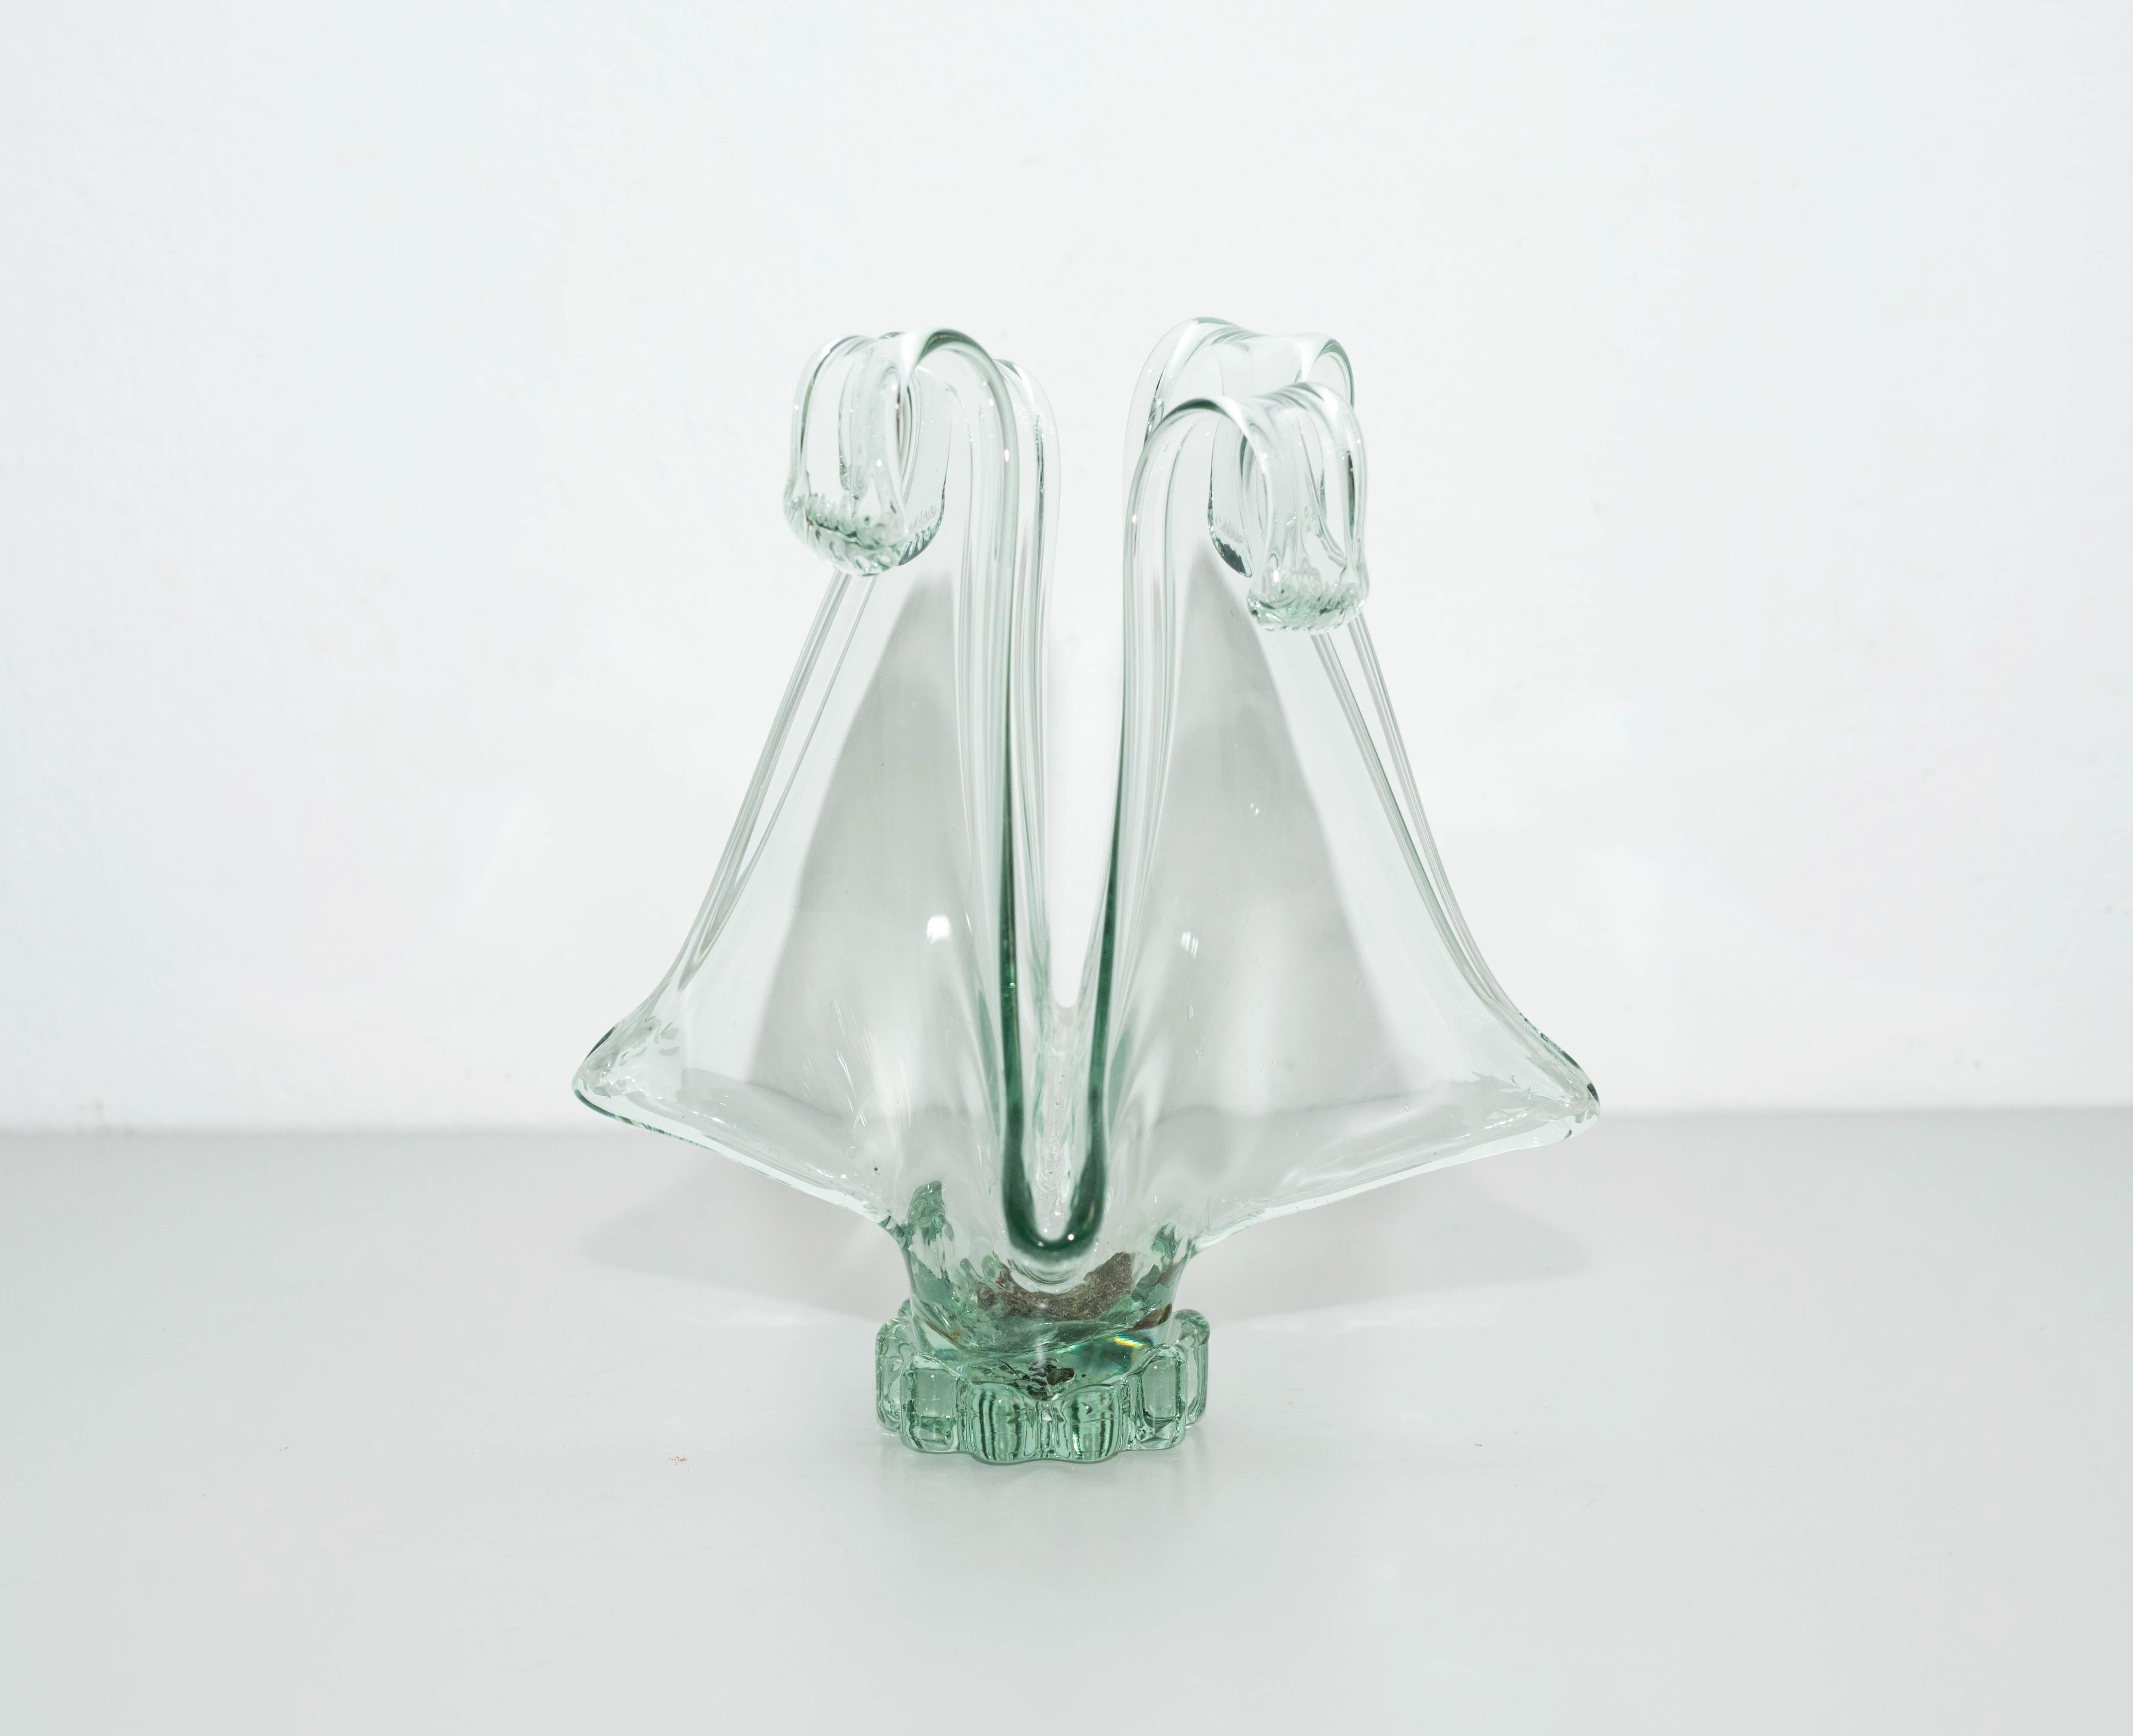 Vase aus Muranoglas, um 1970
Hergestellt in Italien.

Originaler Zustand mit geringen alters- und gebrauchsbedingten Abnutzungserscheinungen, der eine schöne Patina aufweist.

Material:
Glas

Abmessungen:
 H 28 cm
 B 18 cm
 H 28 cm.

